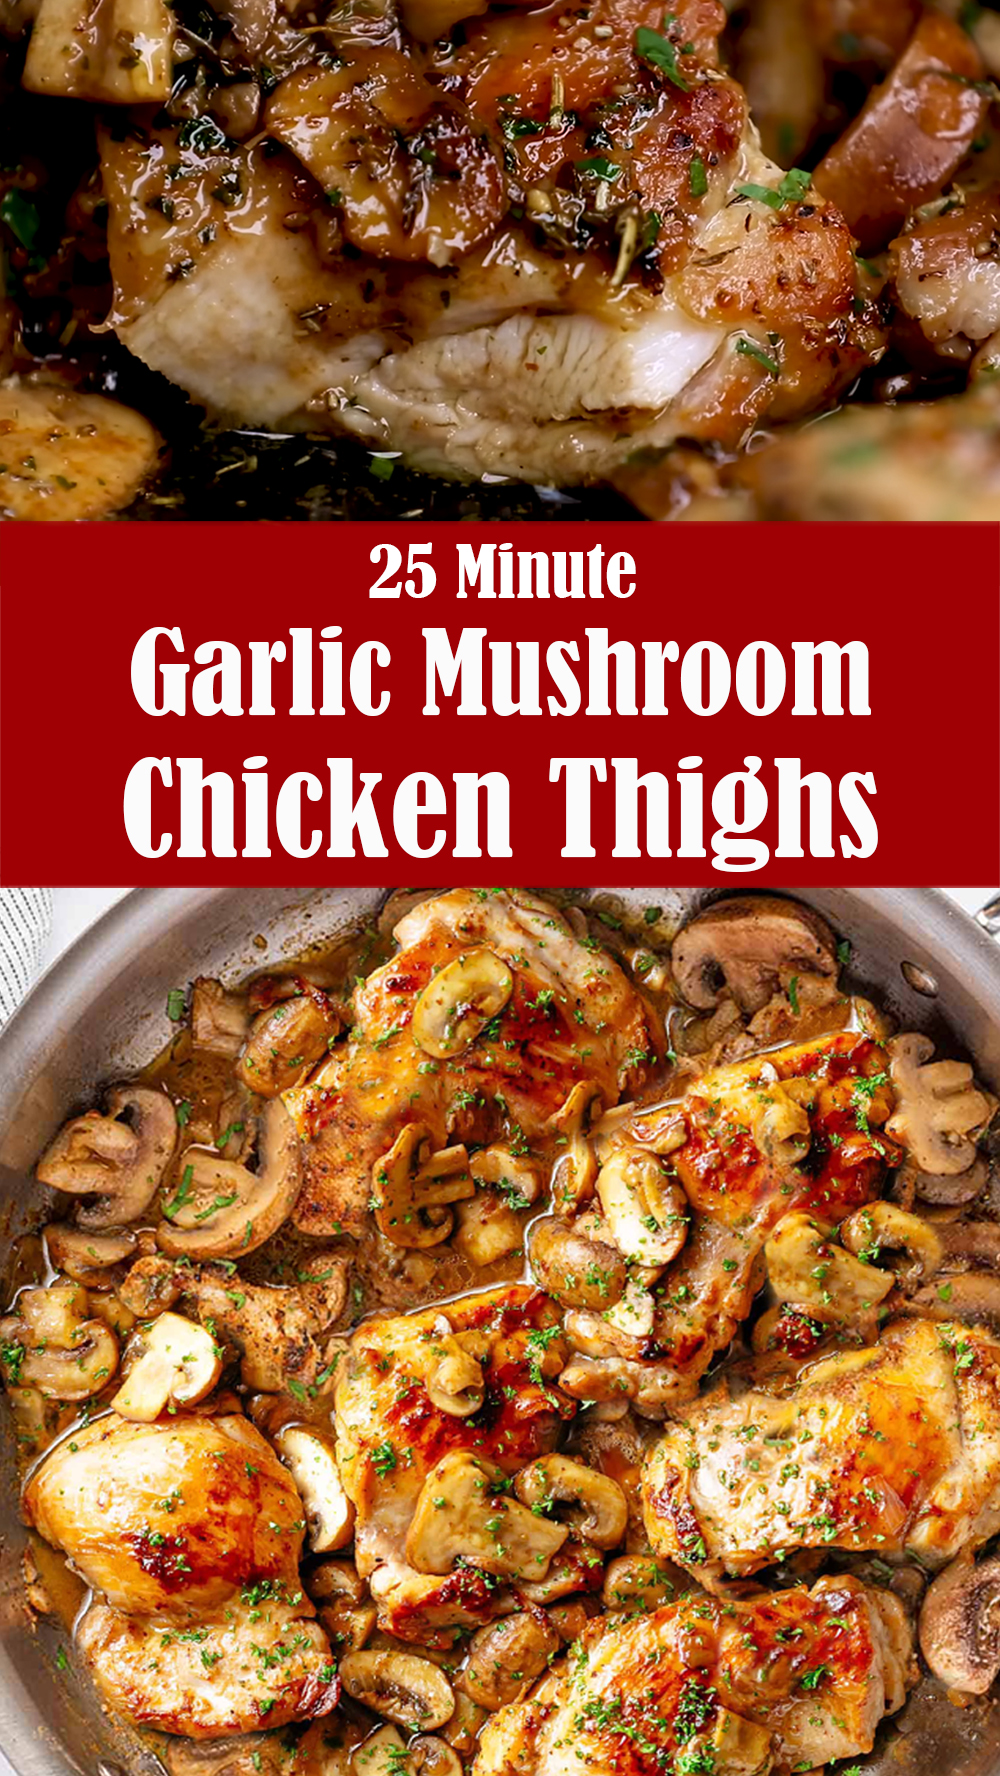 25 Minute Garlic Mushroom Chicken Thighs